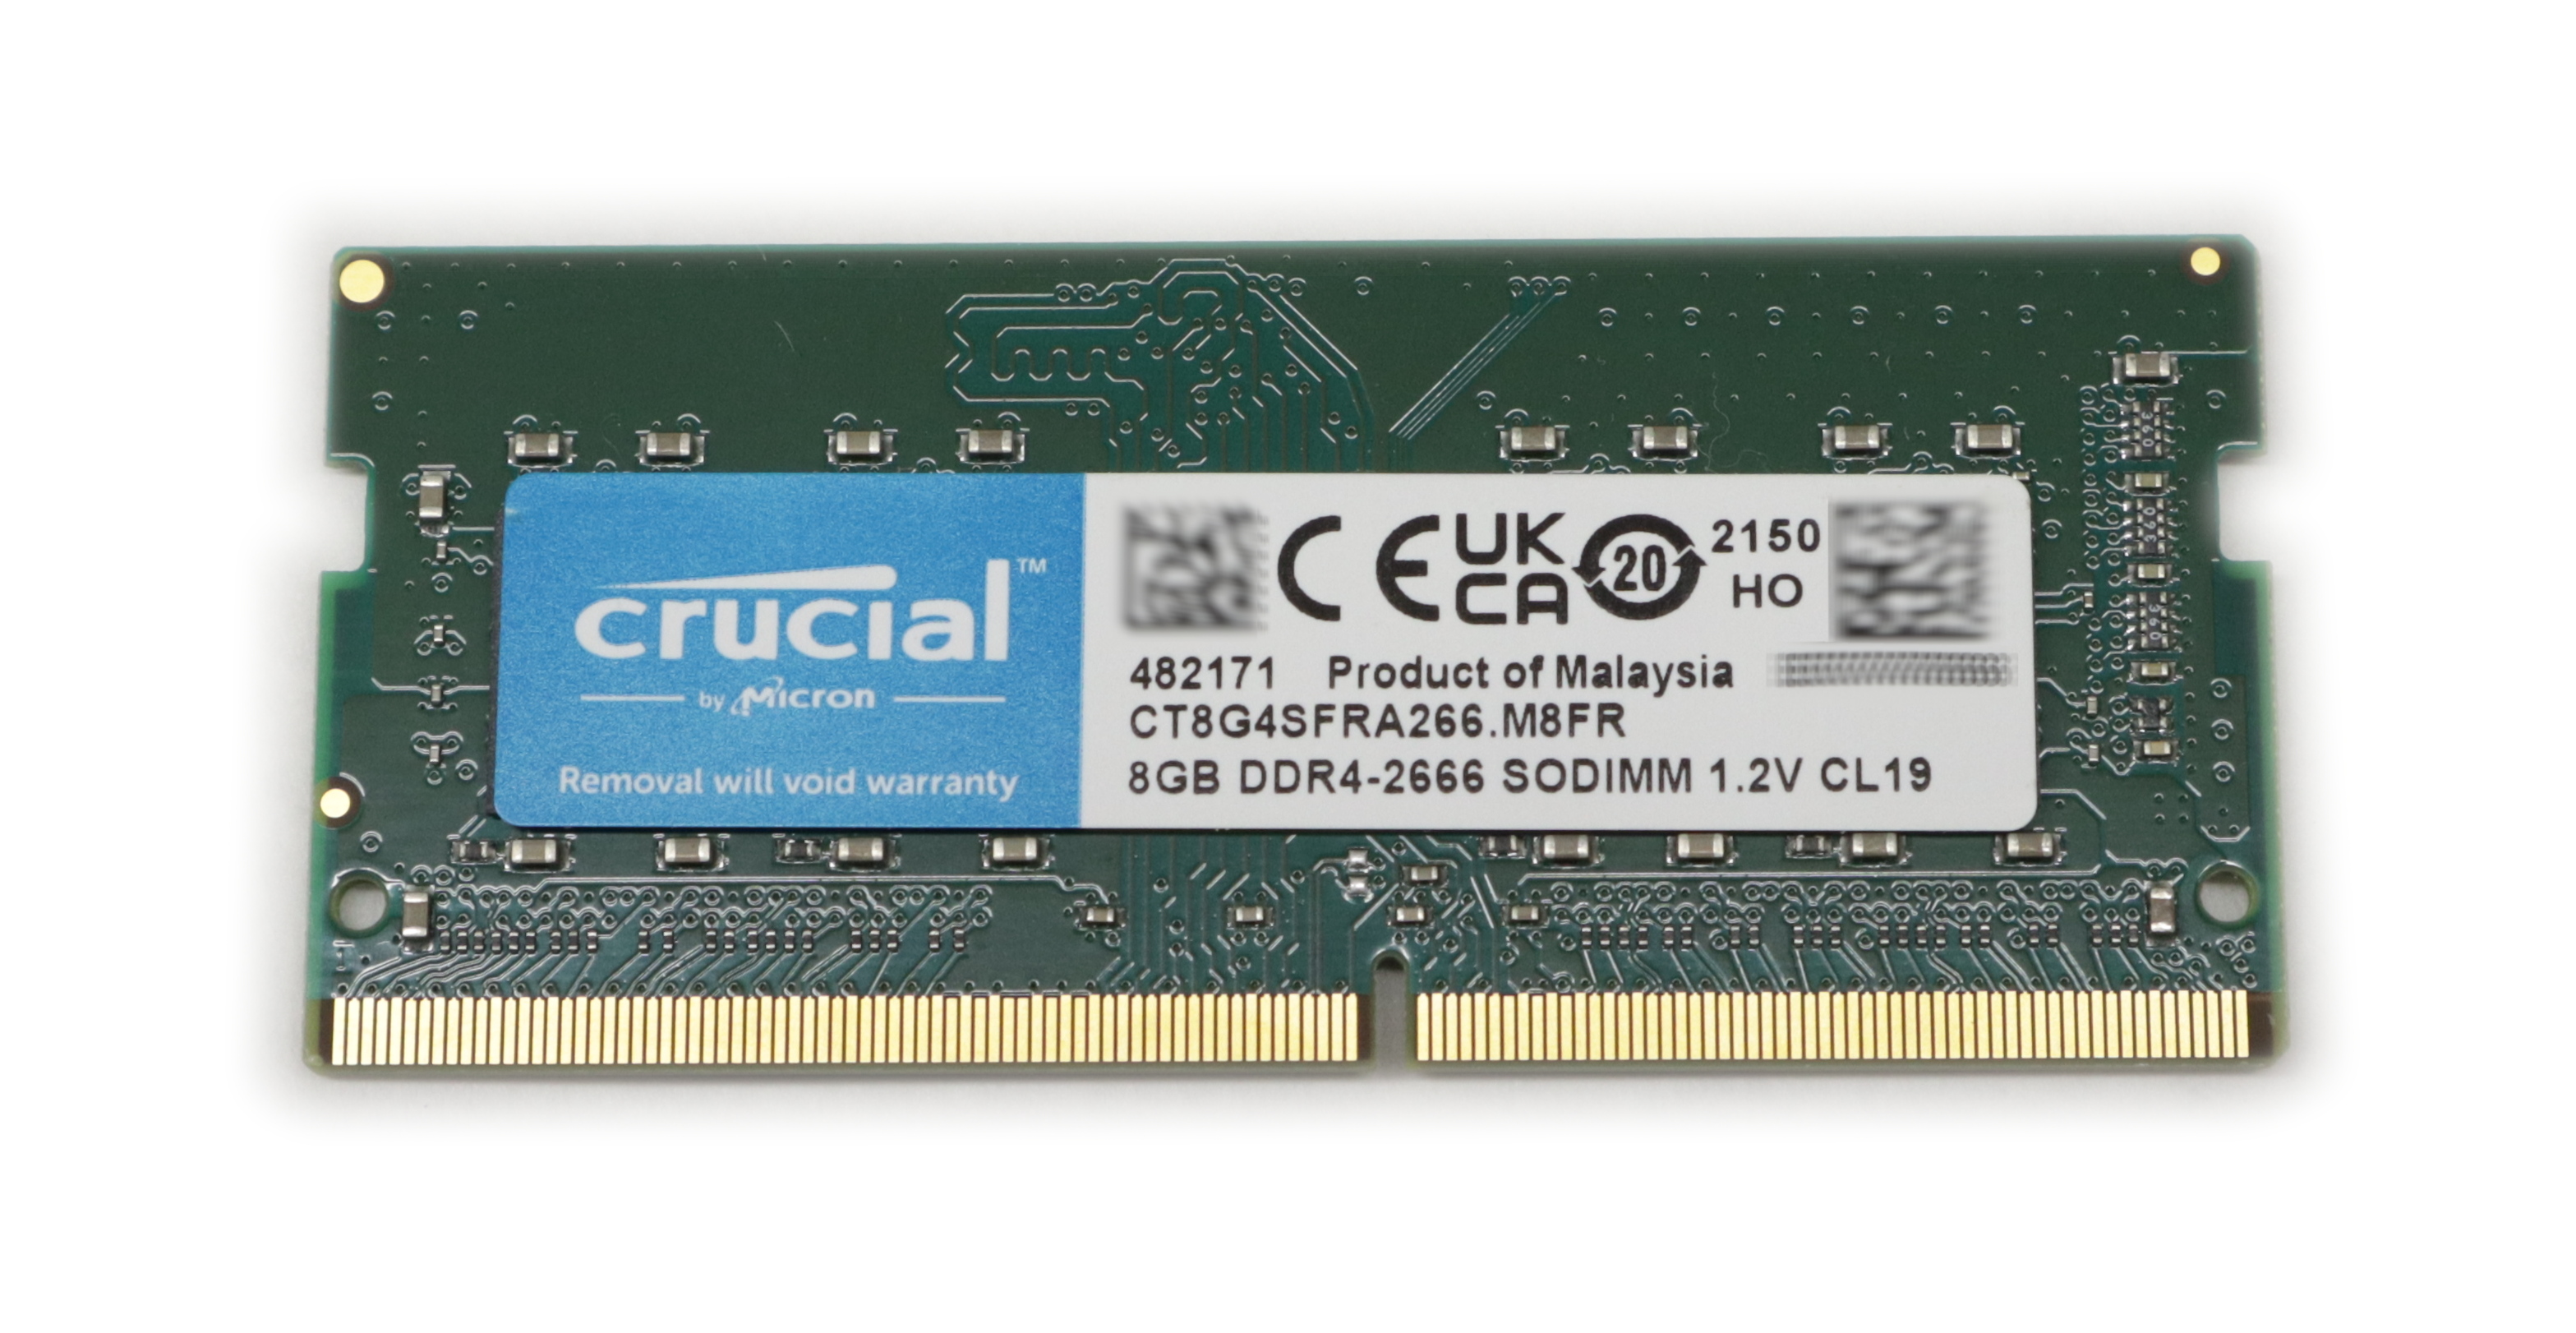 Crucial 8GB CT8G4SFRA266.M8FR DDR4-2666 SoDimm 1.2V 260-pin PC4-21300 unbuffered